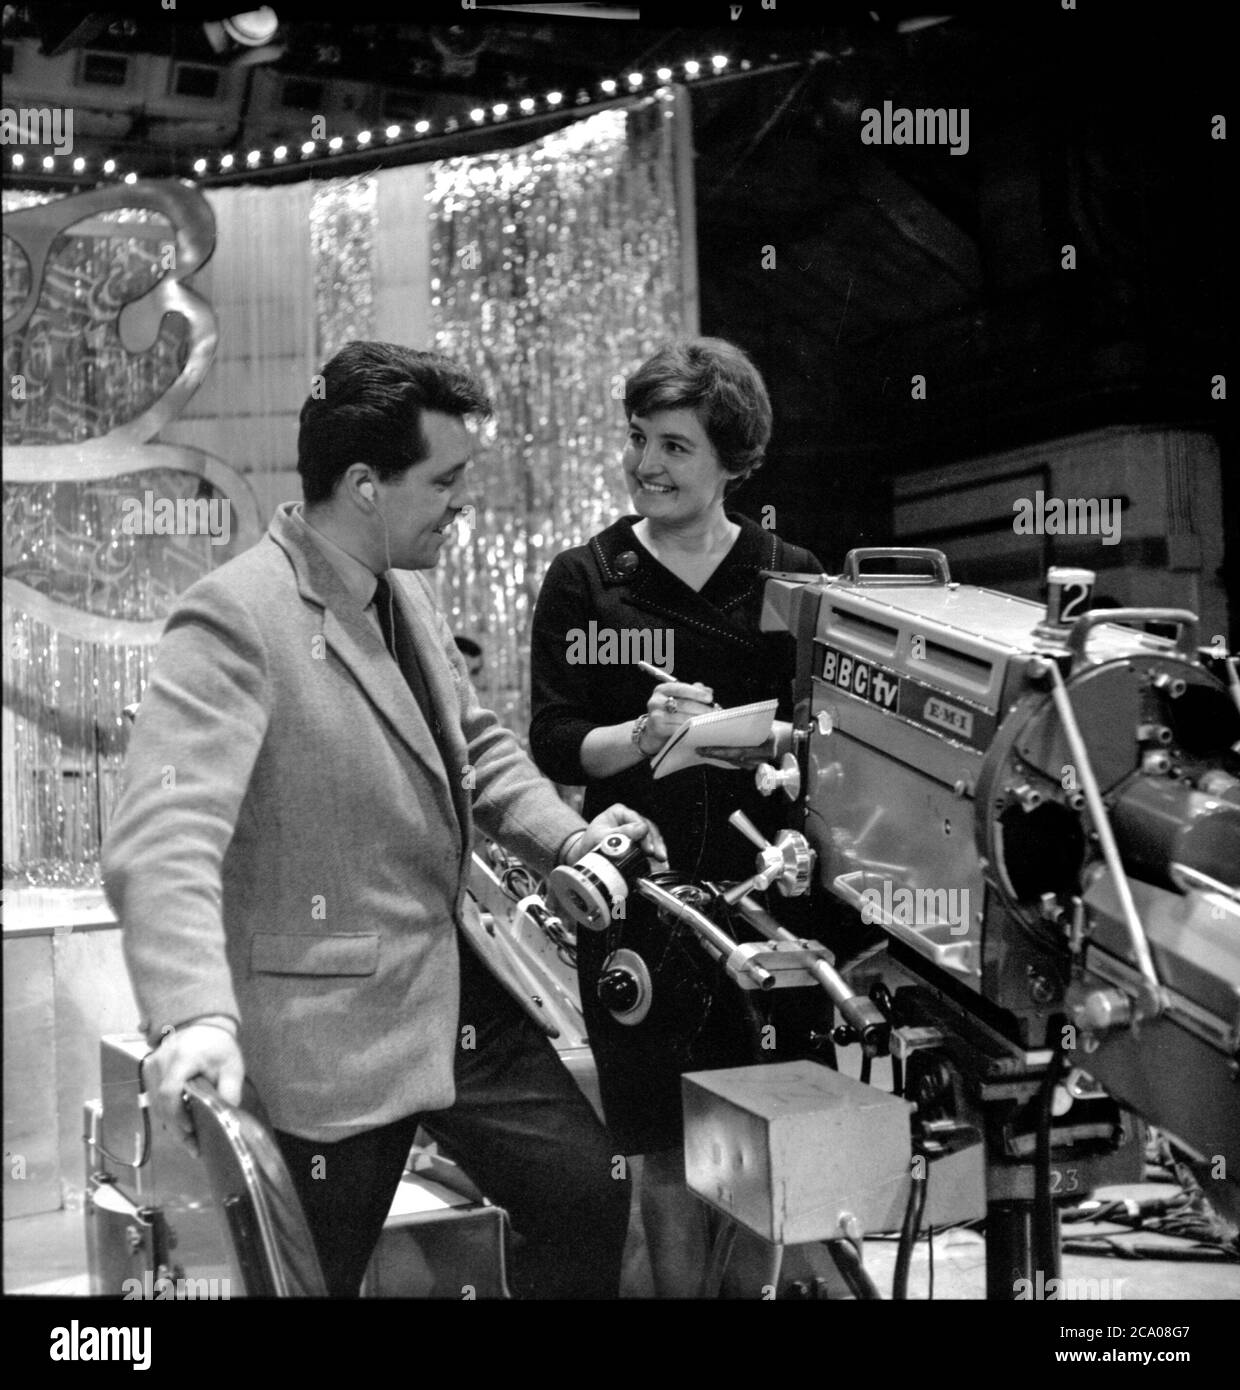 John Hughes producteur de la BBC Music Television show Top Des pop se tient à côté d'un téléviseur à l'ancienne appareil photo dans les années 1960 Banque D'Images